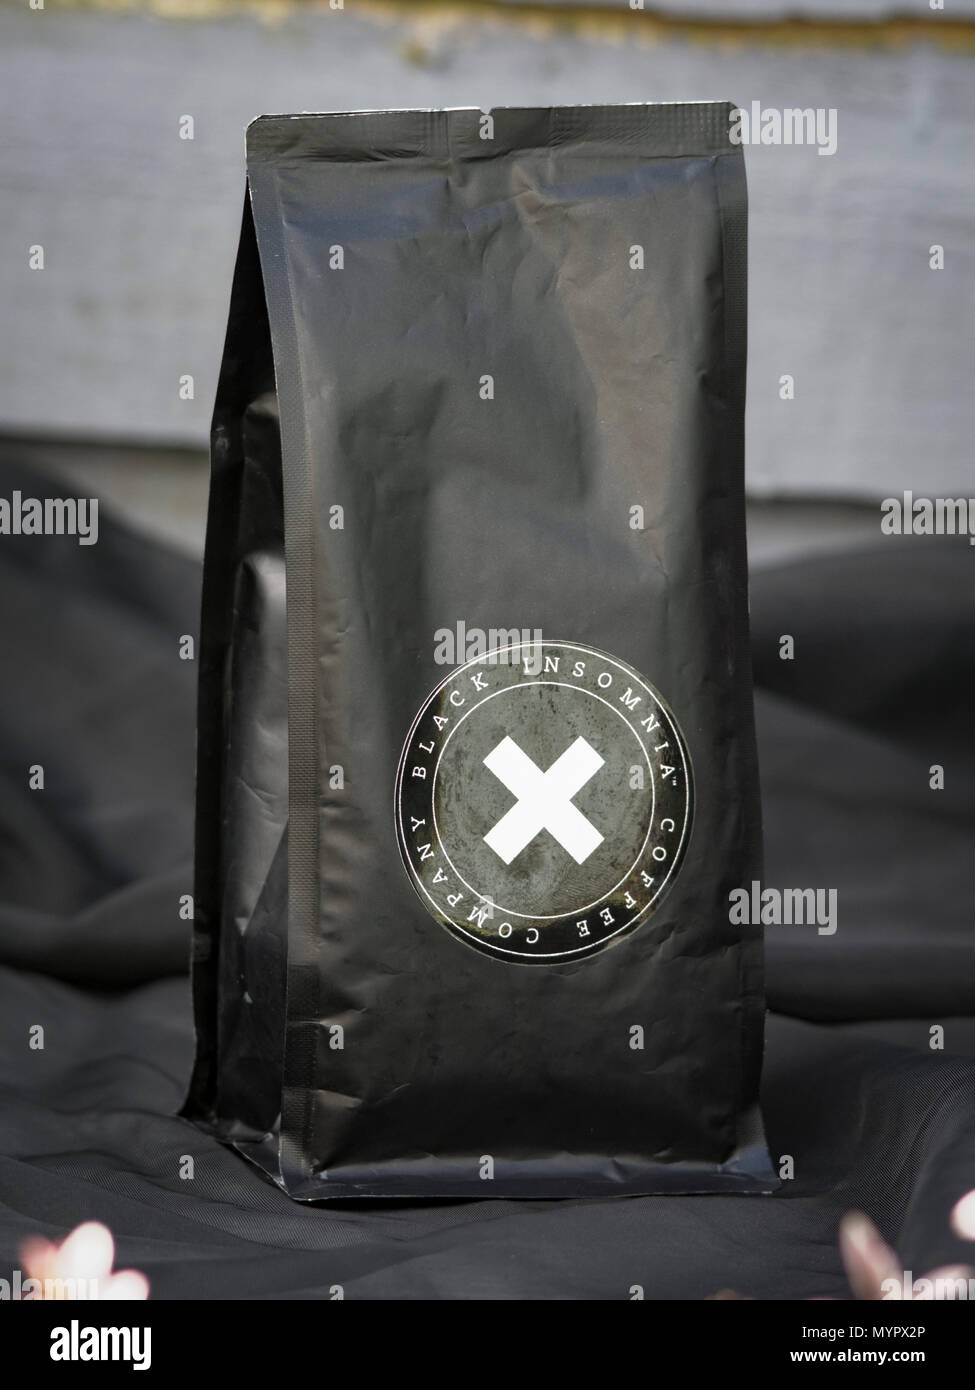 Insonnia nero caffè in compagnia, il più forte del mondo il caffè contiene 702 milligrammi di caffeina per tazza, realizzato nel Delaware, STATI UNITI D'AMERICA Foto Stock